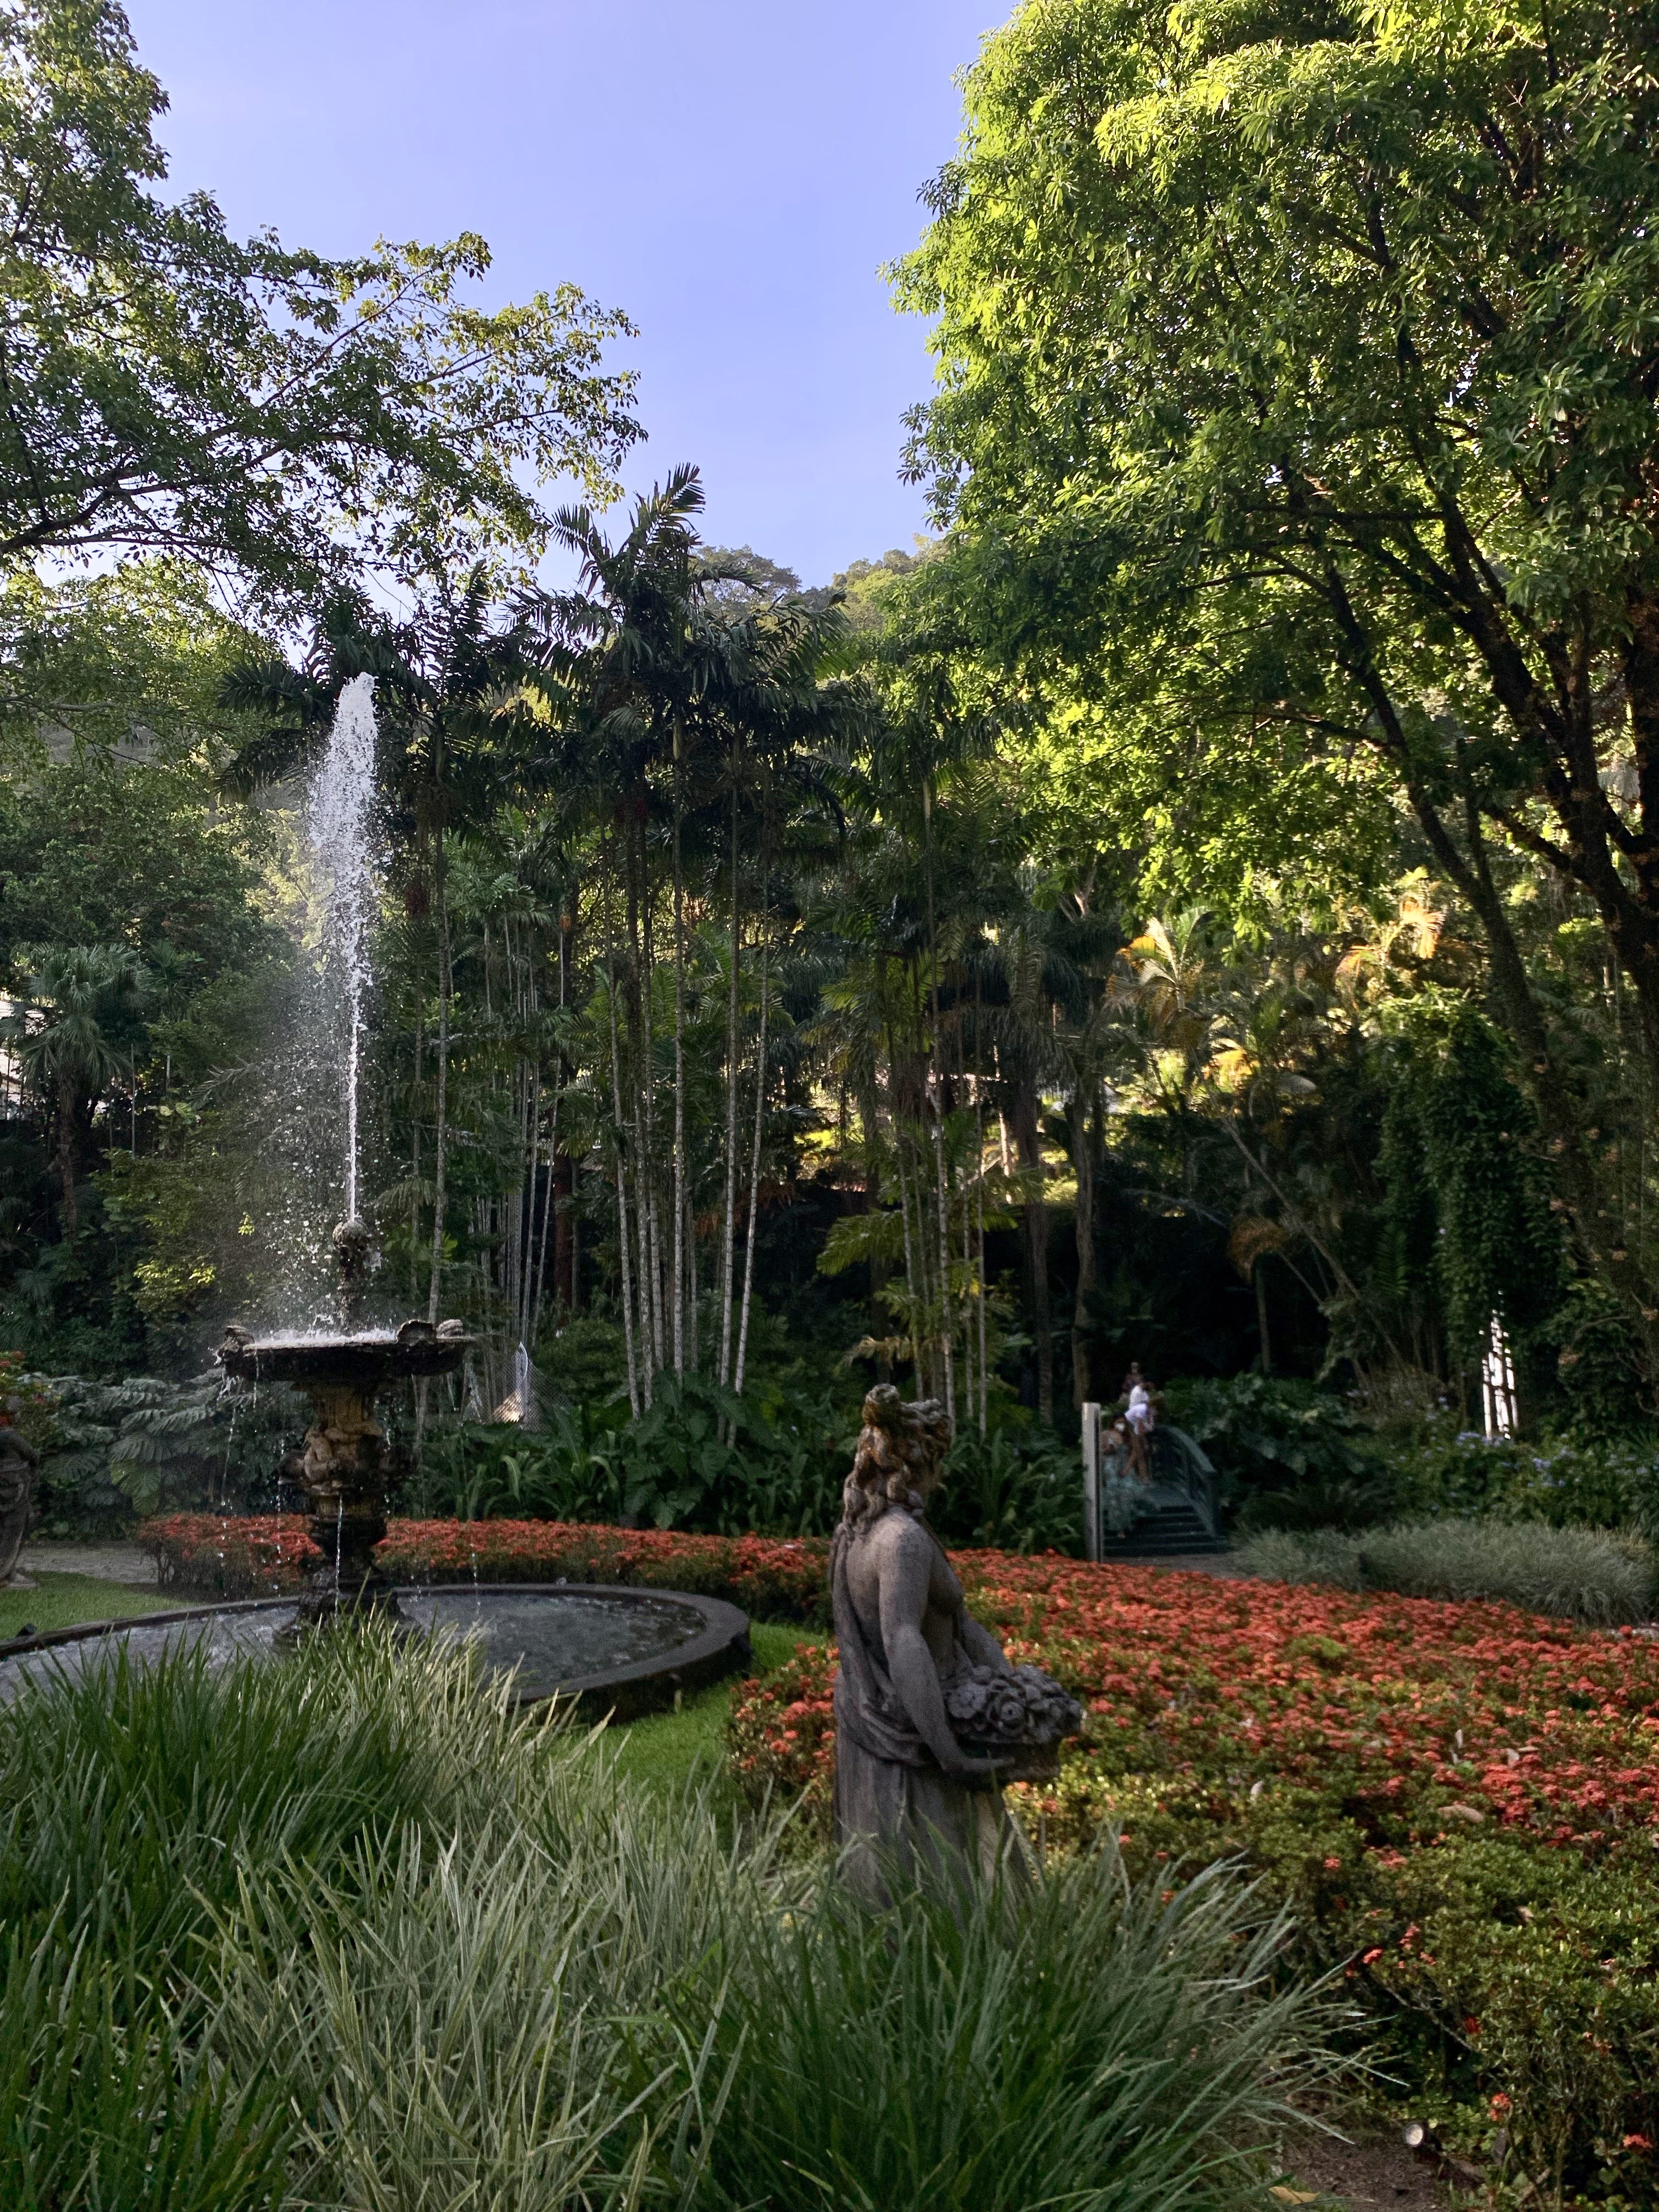 Jardim projetado por Burle Marx, o maior paisagista do Brasil